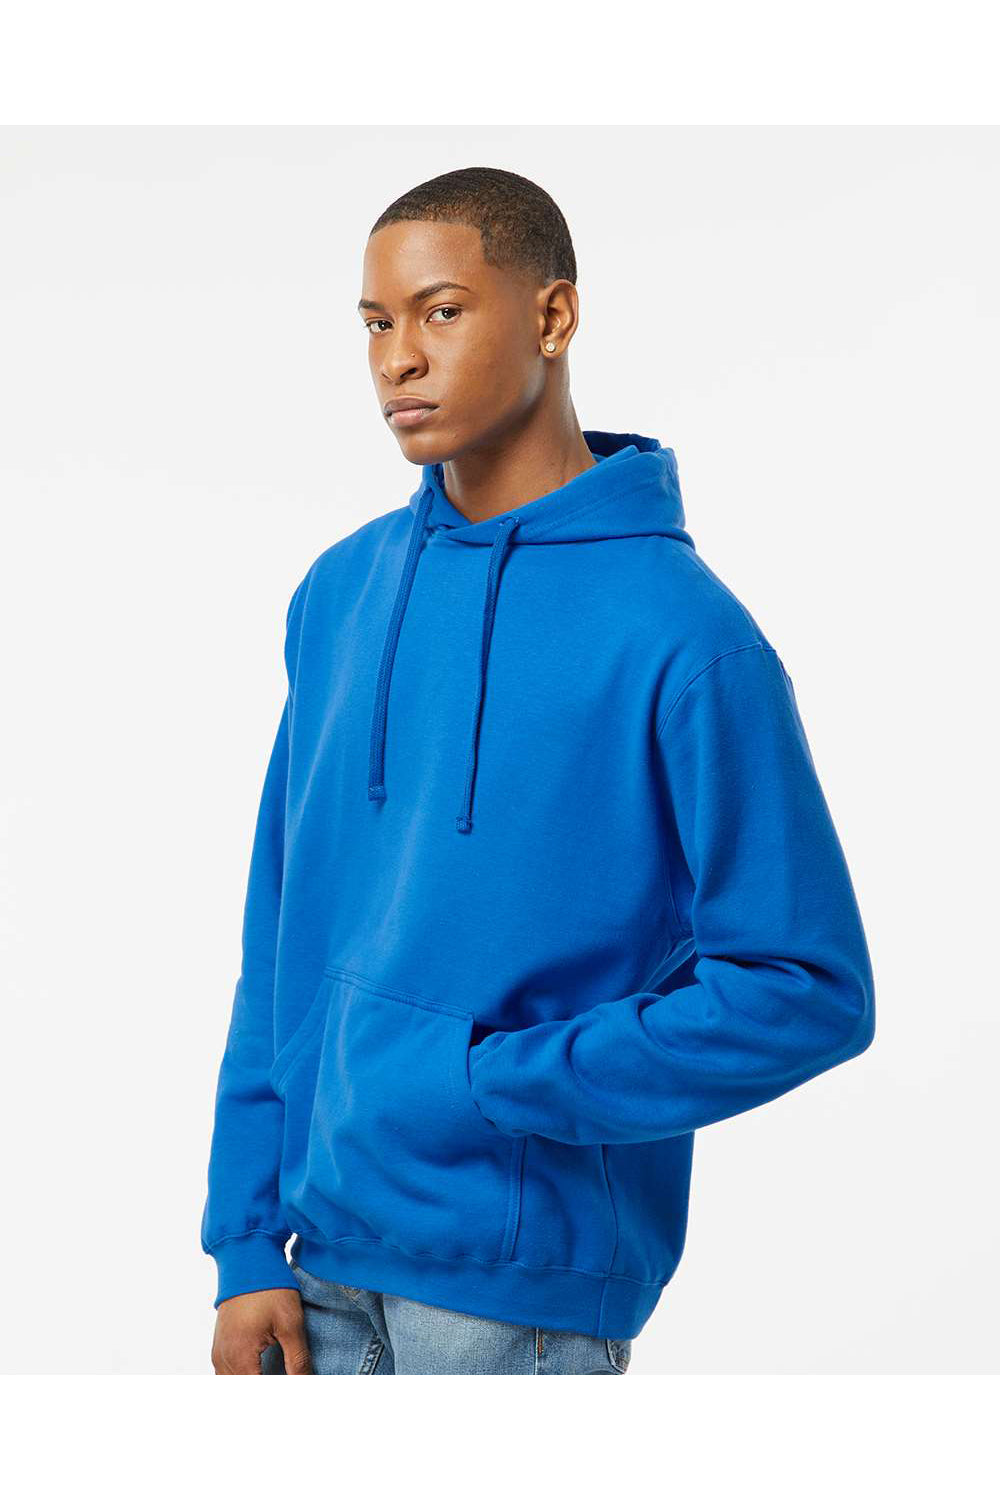 Tultex 320 Mens Fleece Hooded Sweatshirt Hoodie Royal Blue Model Side